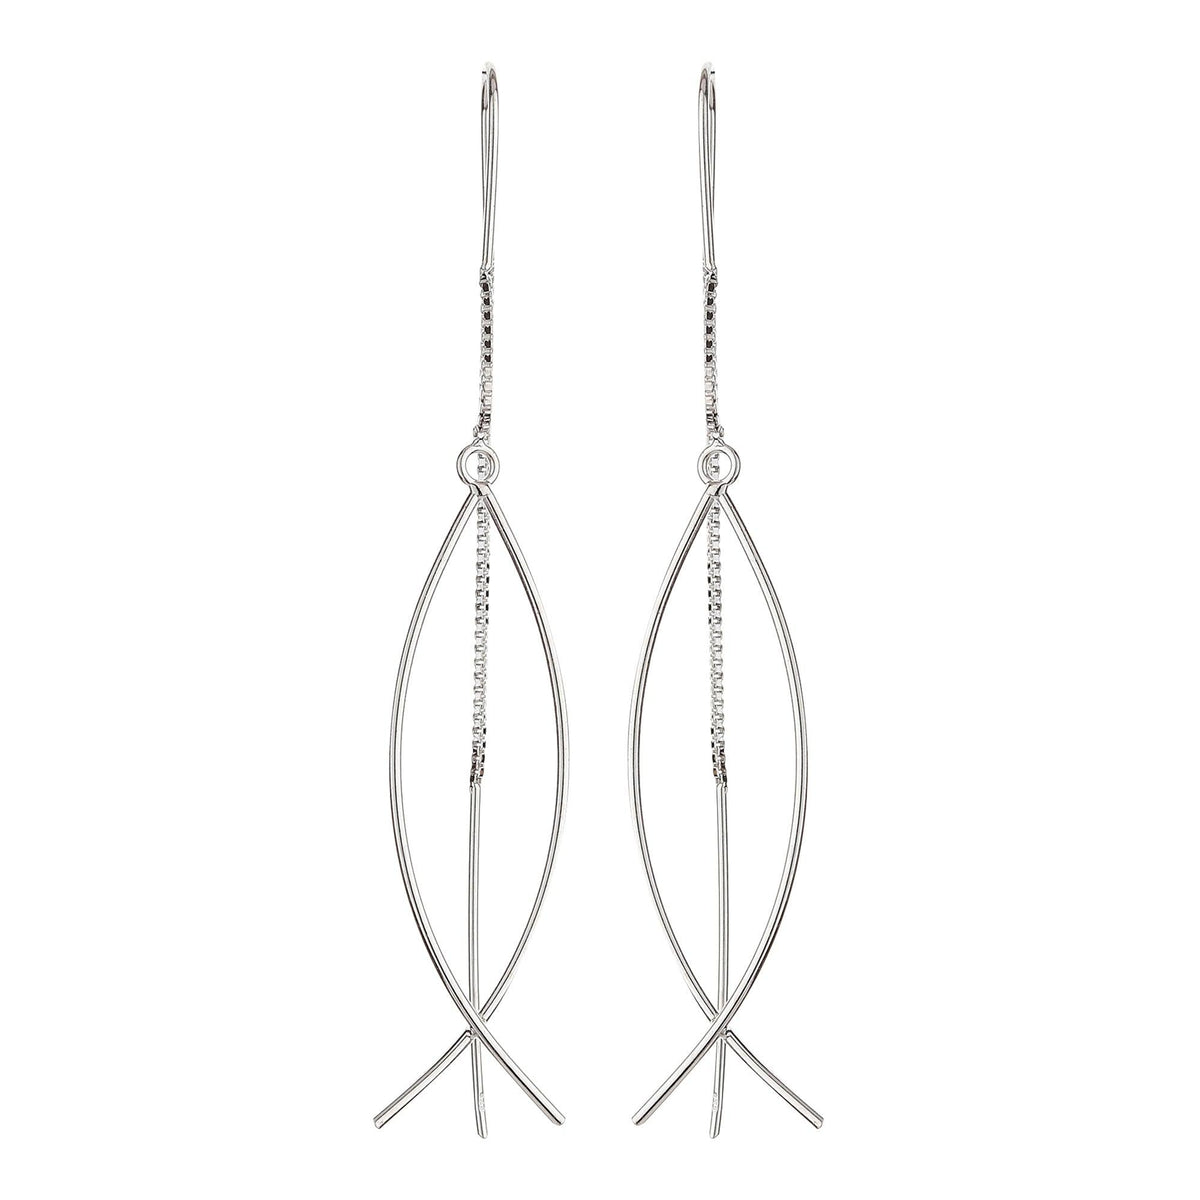 Silver Wired Dangle Hoop Earrings - silvermark